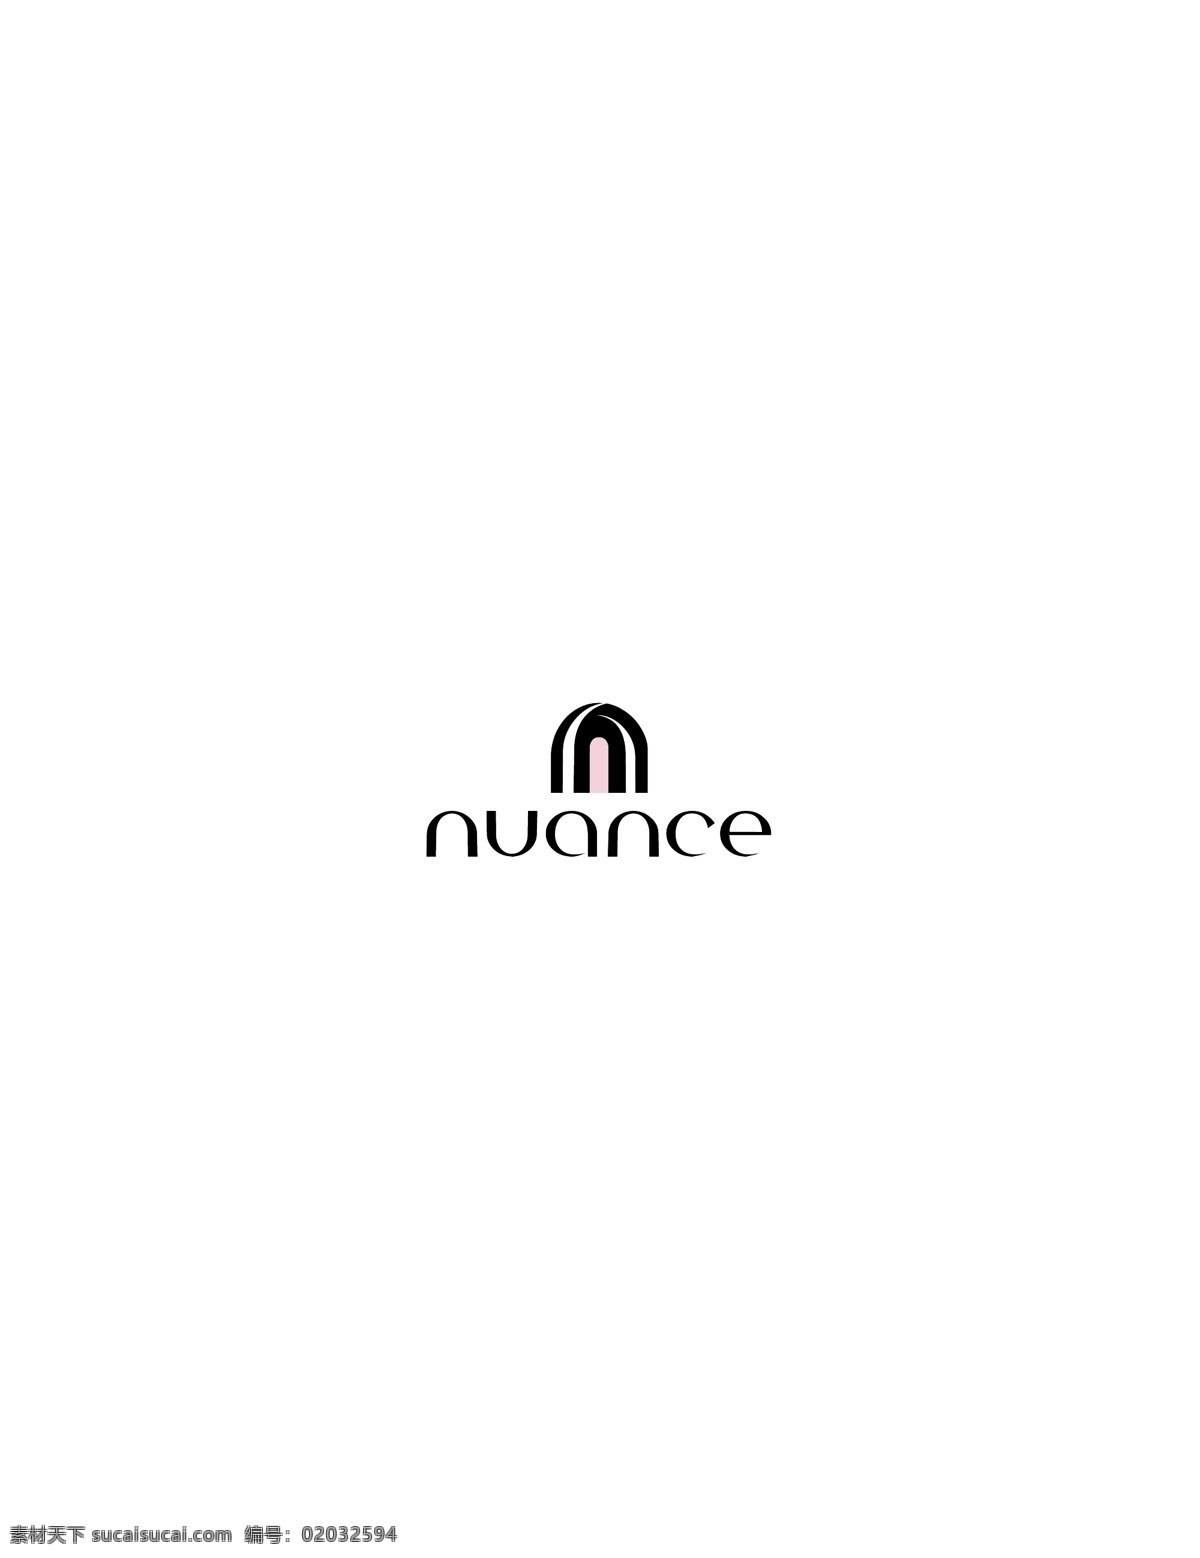 nuance logo大全 logo 设计欣赏 商业矢量 矢量下载 名牌 服饰 标志设计 欣赏 网页矢量 矢量图 其他矢量图